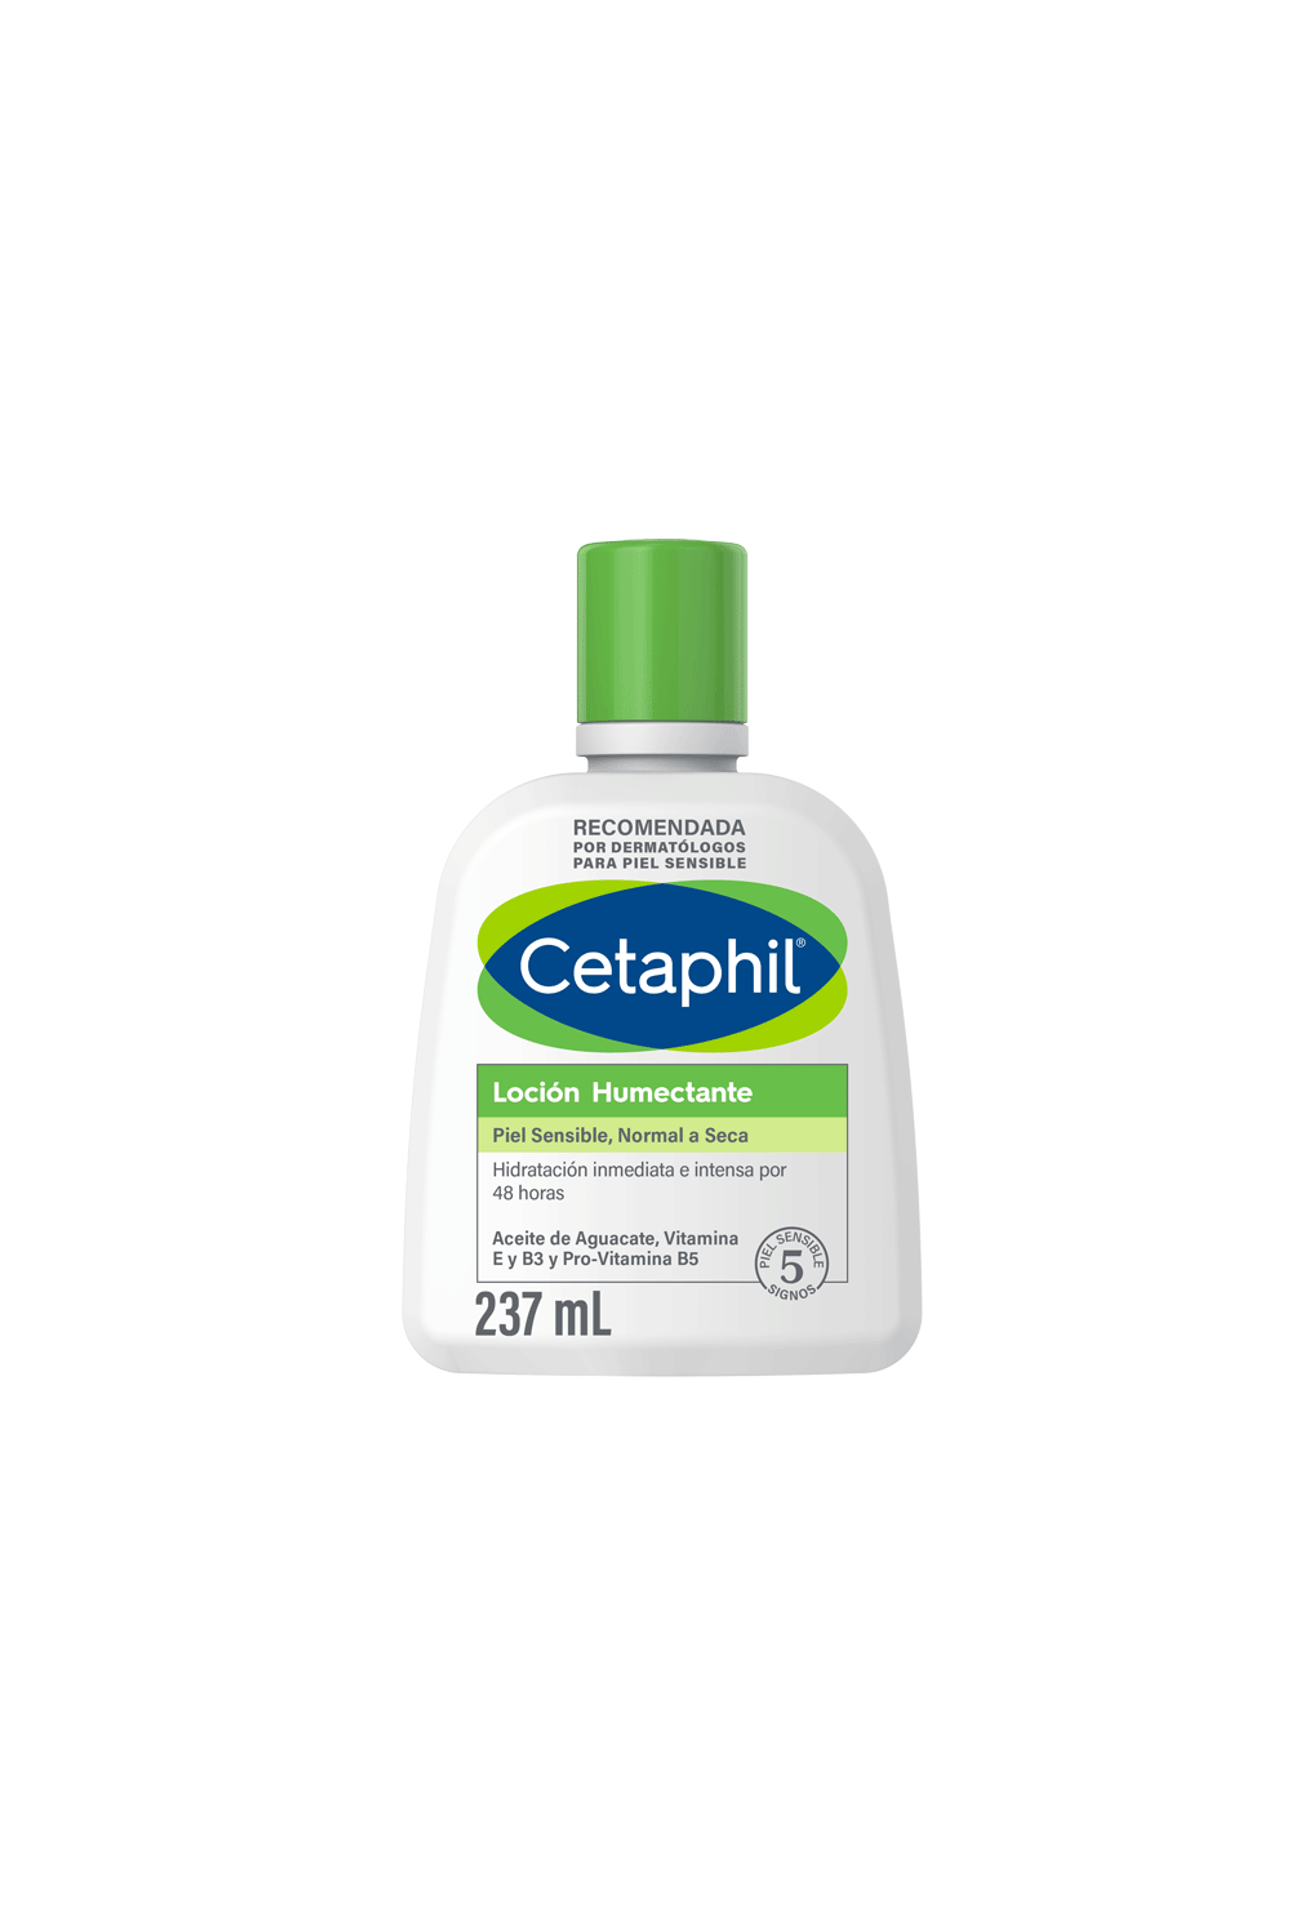 Cetaphil-Locion-Humectante-Cetaphil-x-237-ml-3499320013925